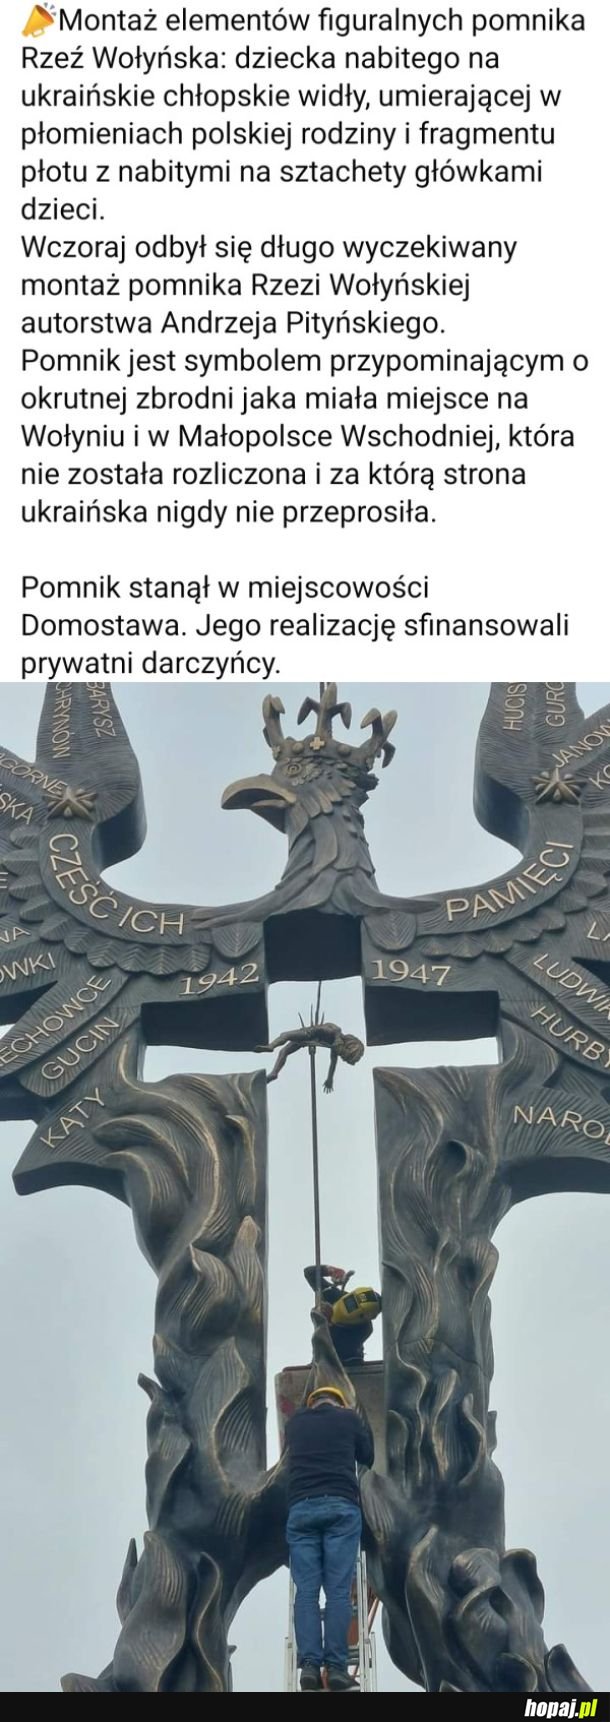 Pomnik autorstwa Andrzeja Pityńskiego